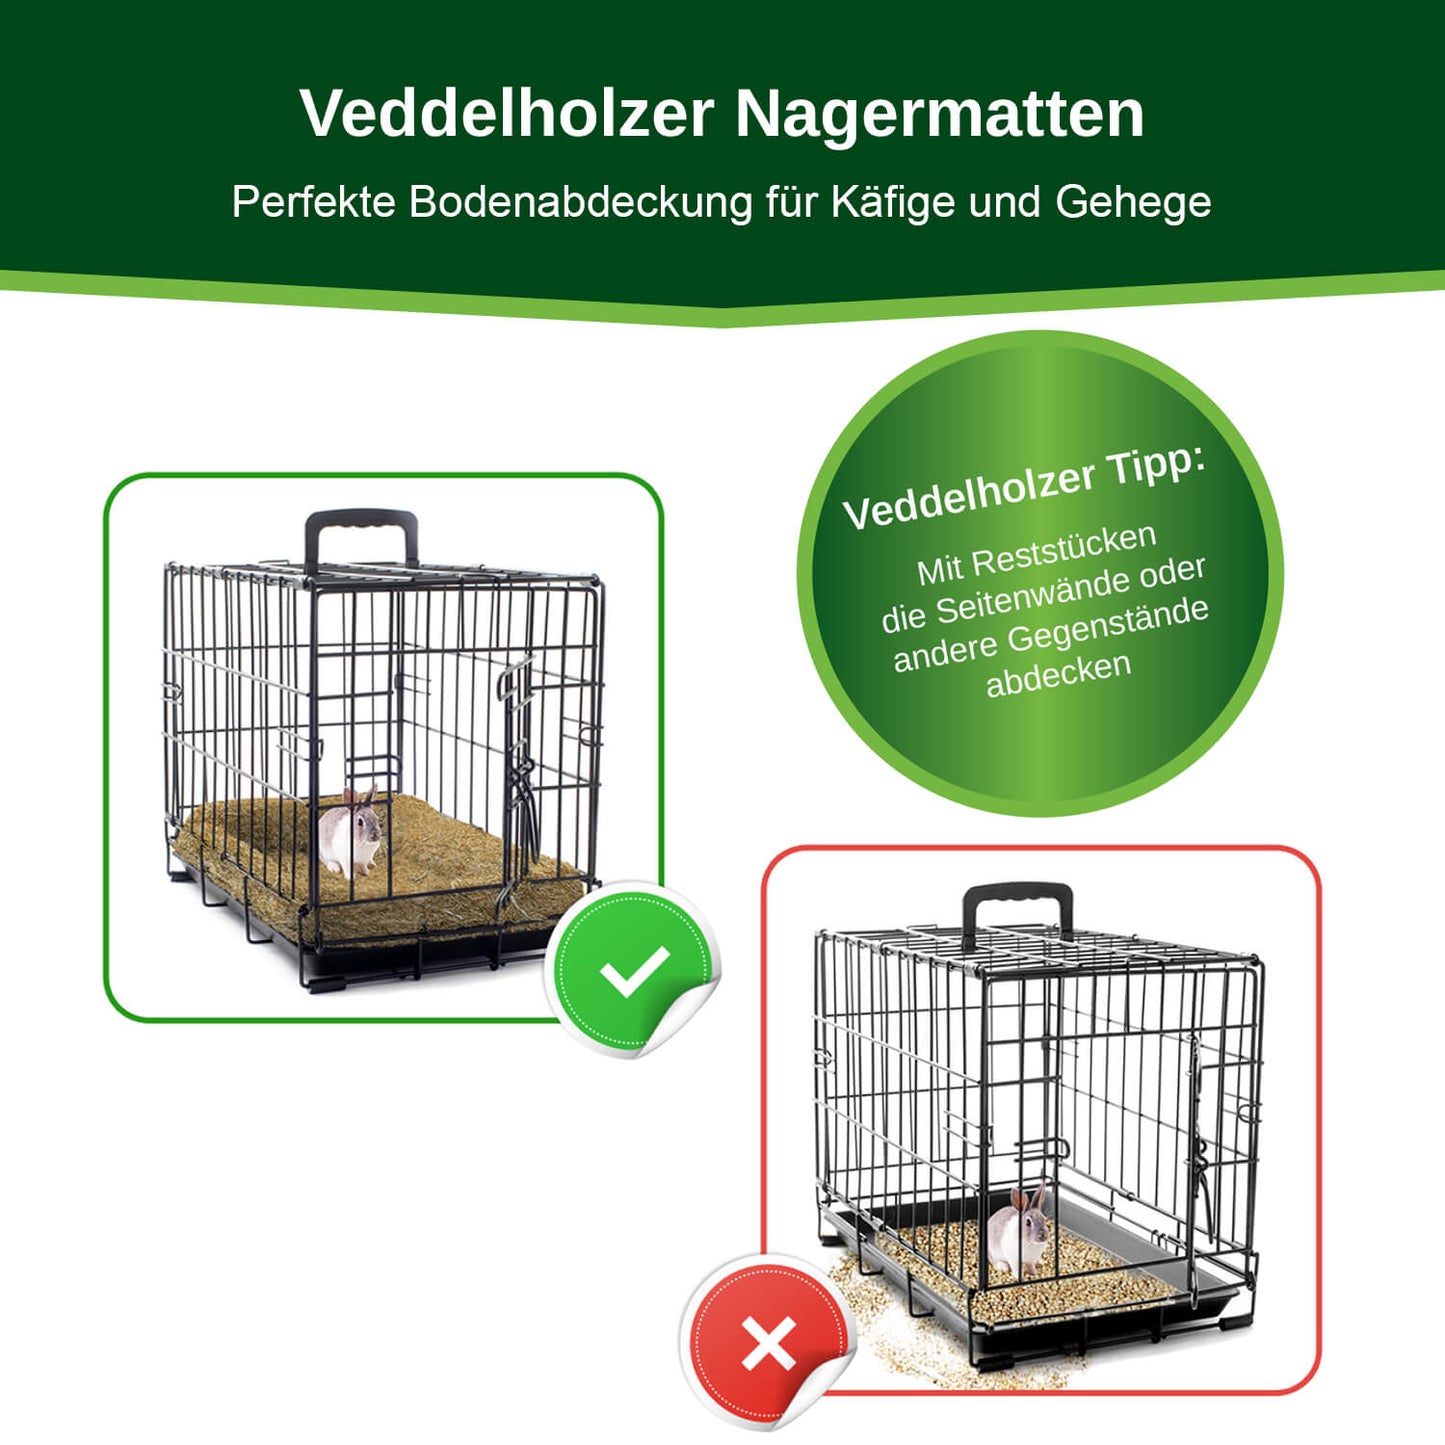 Veddelholzer Hanfmatten für Käfige & Gehege von Nagern.